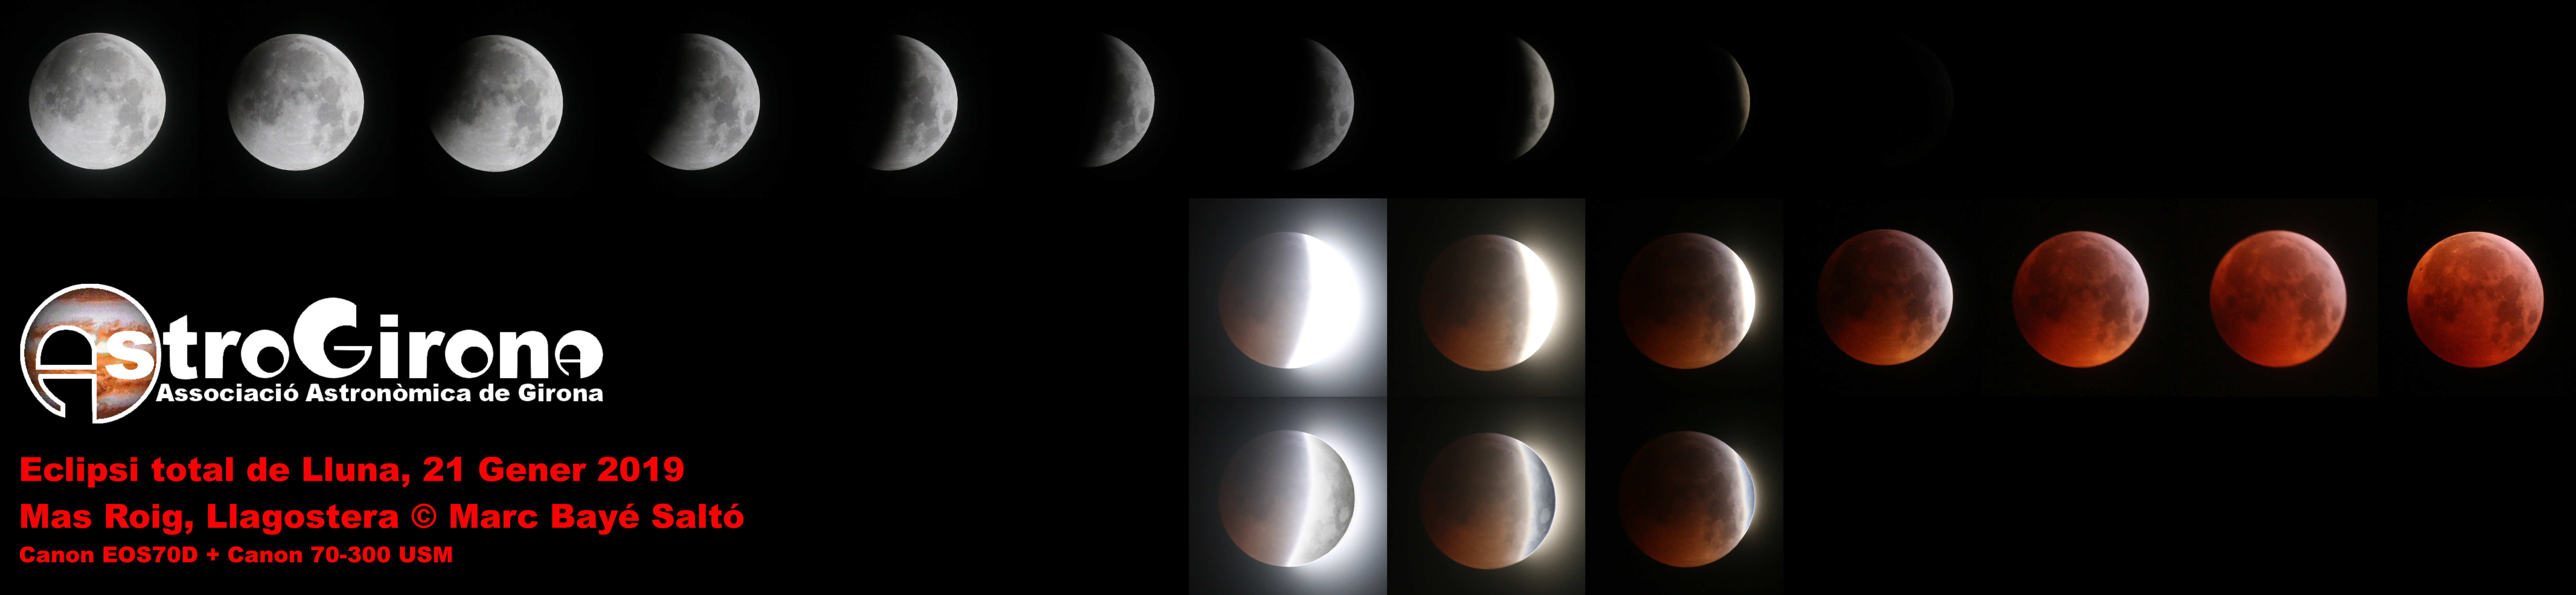 Eclipsi total de Lluna, Marc Bayé